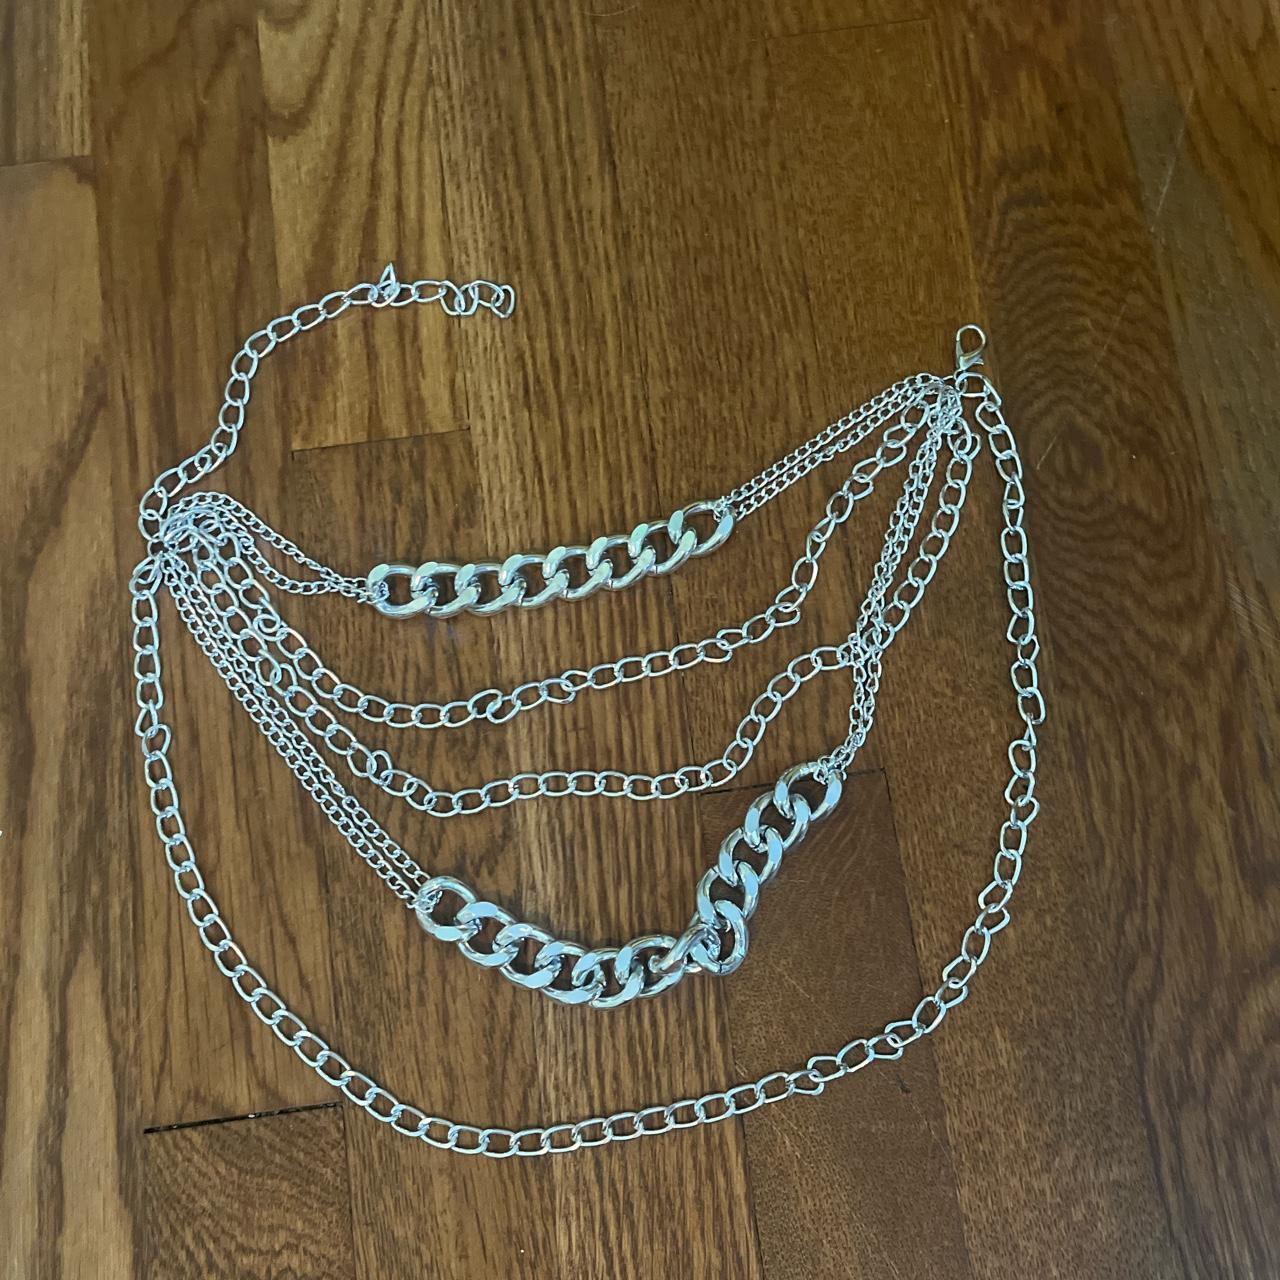 Billie Eilish layered chain necklace #BillieEilish - Depop